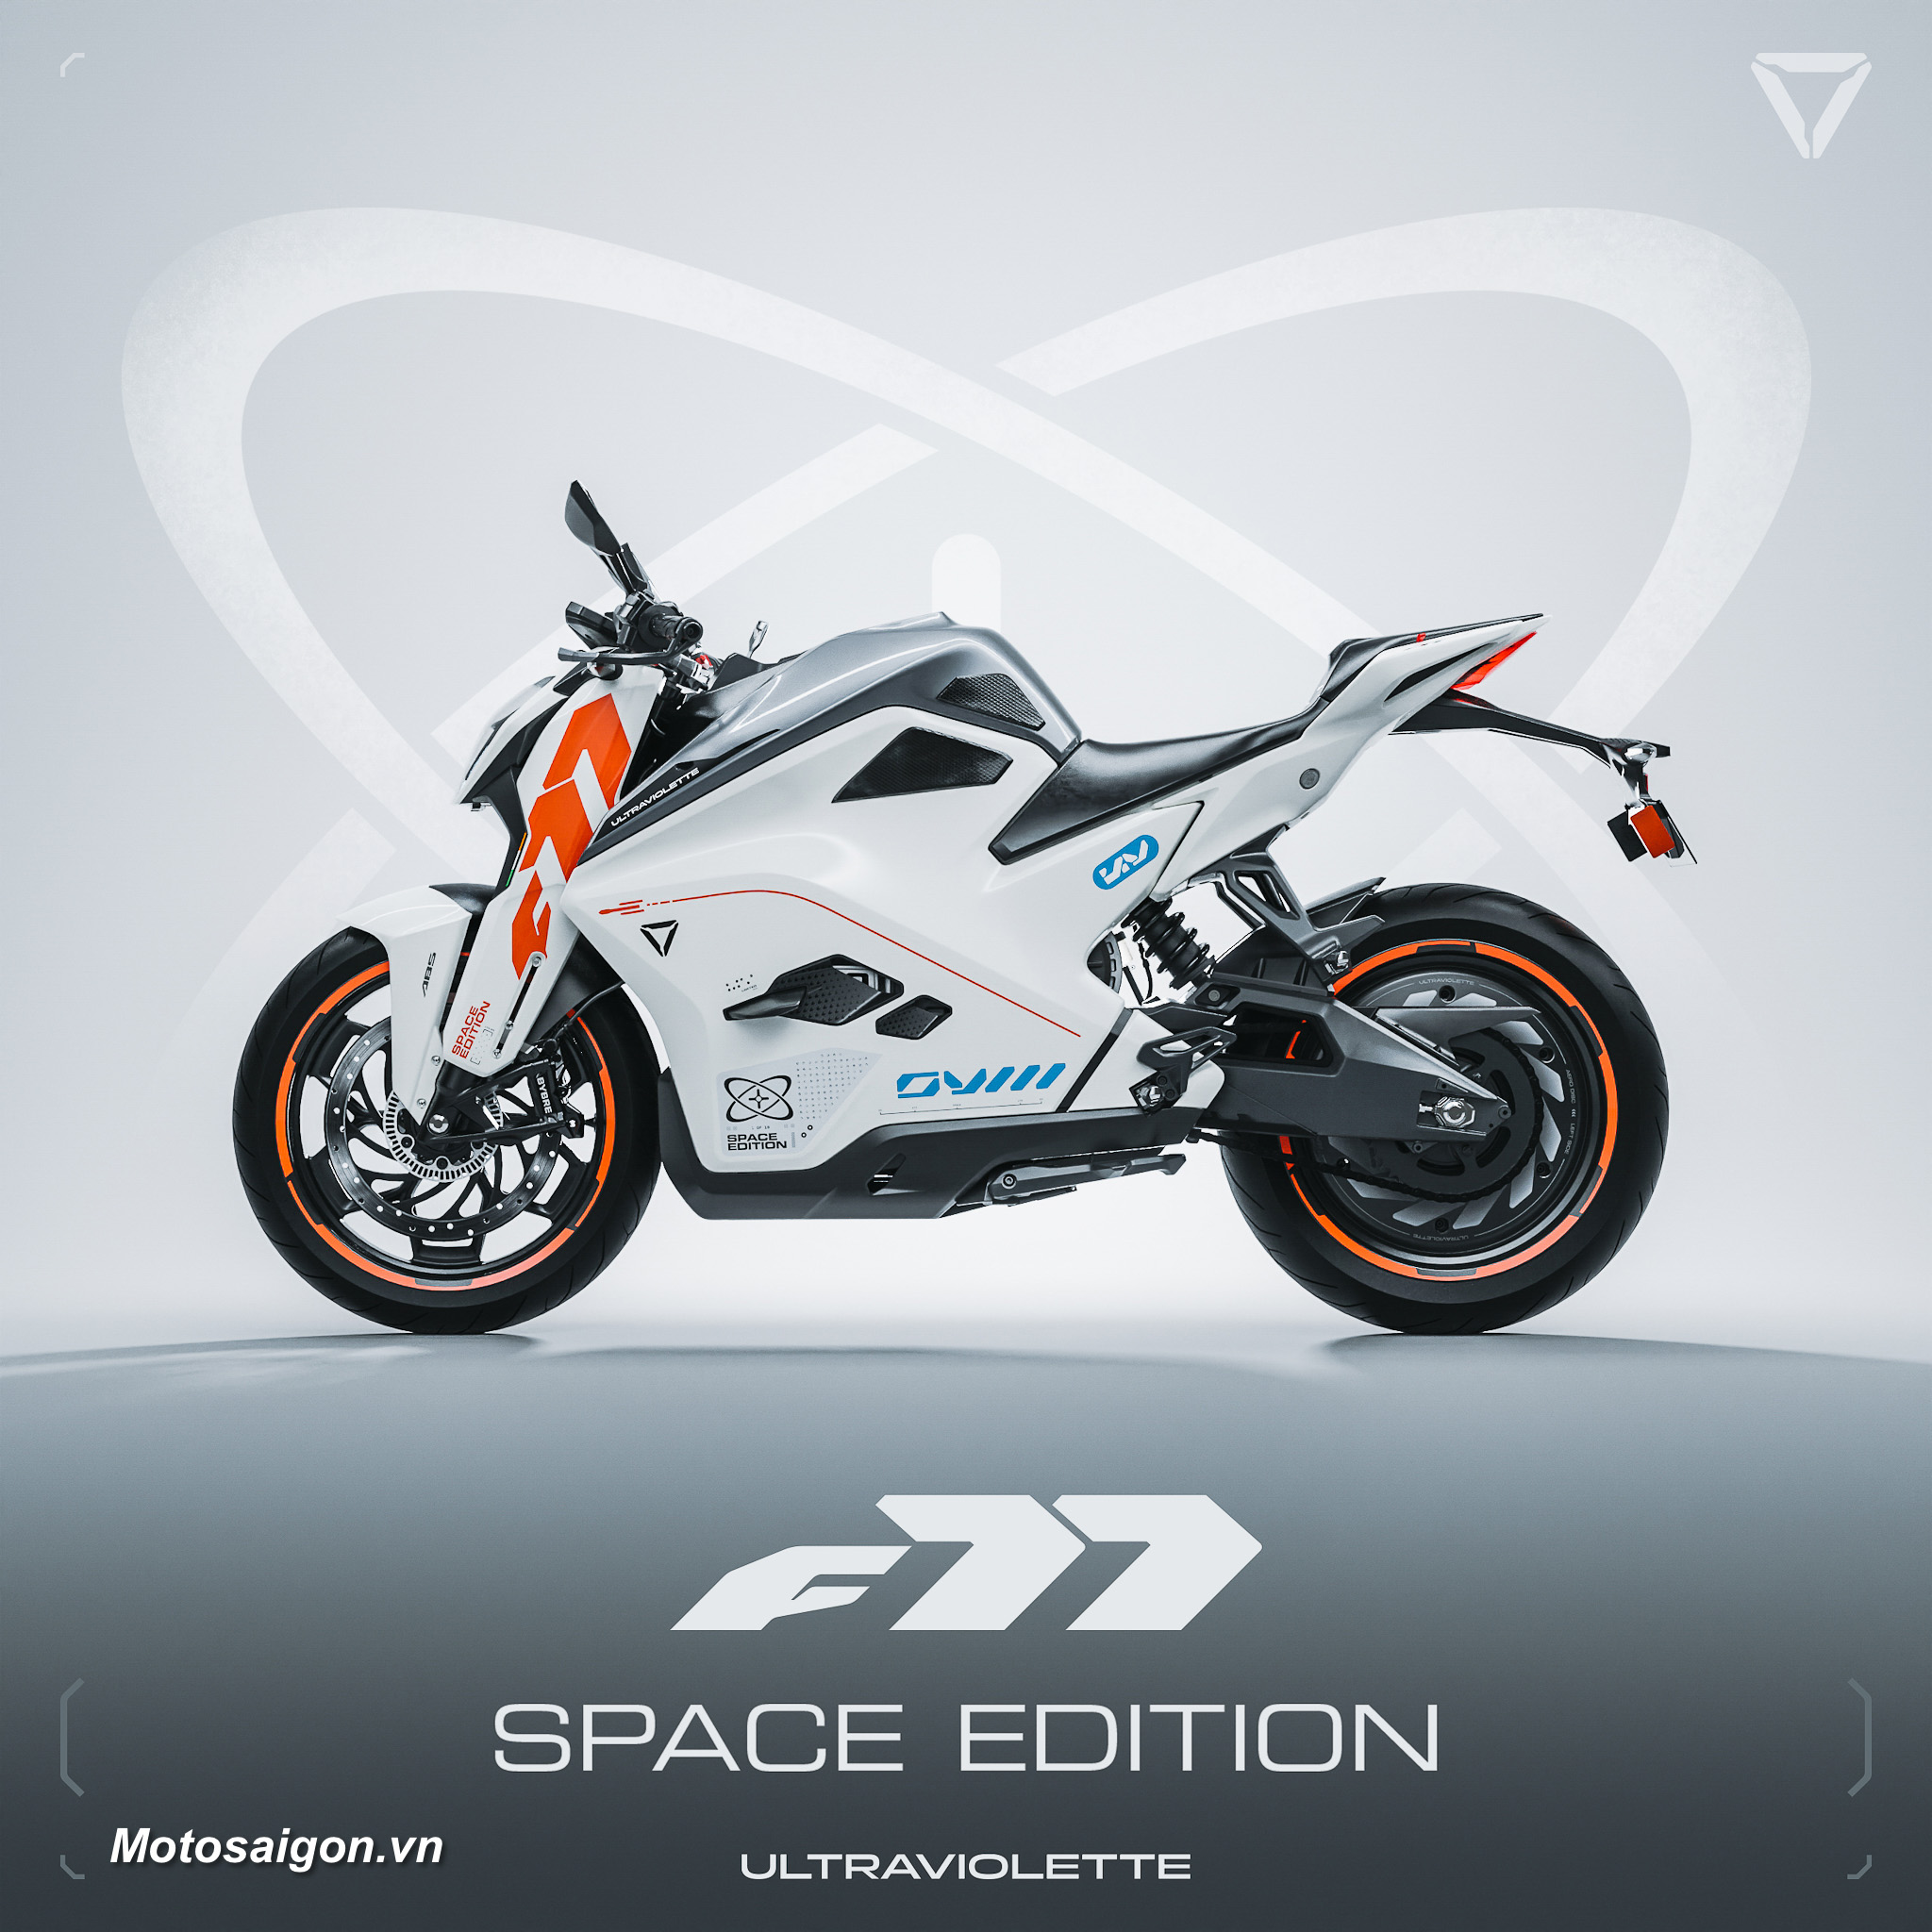 Siêu mô tô điện Ultraviolette F77 Space Edition bán sạch sau 1 phút mở bán